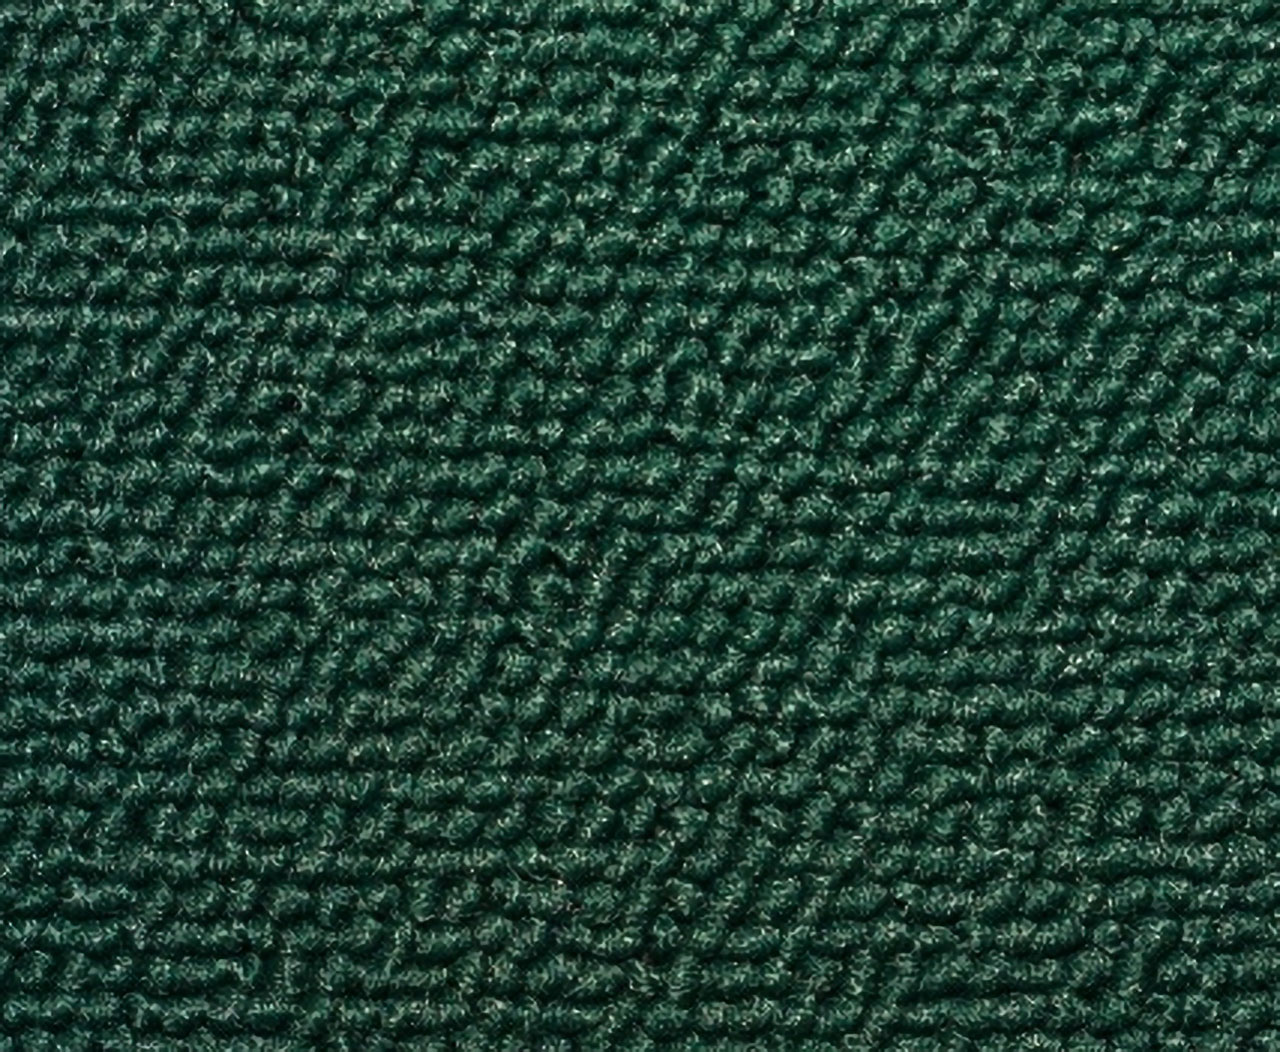 Holden Kingswood HZ Kingswood Ute 33C Sage Green Carpet (Image 1 of 1)